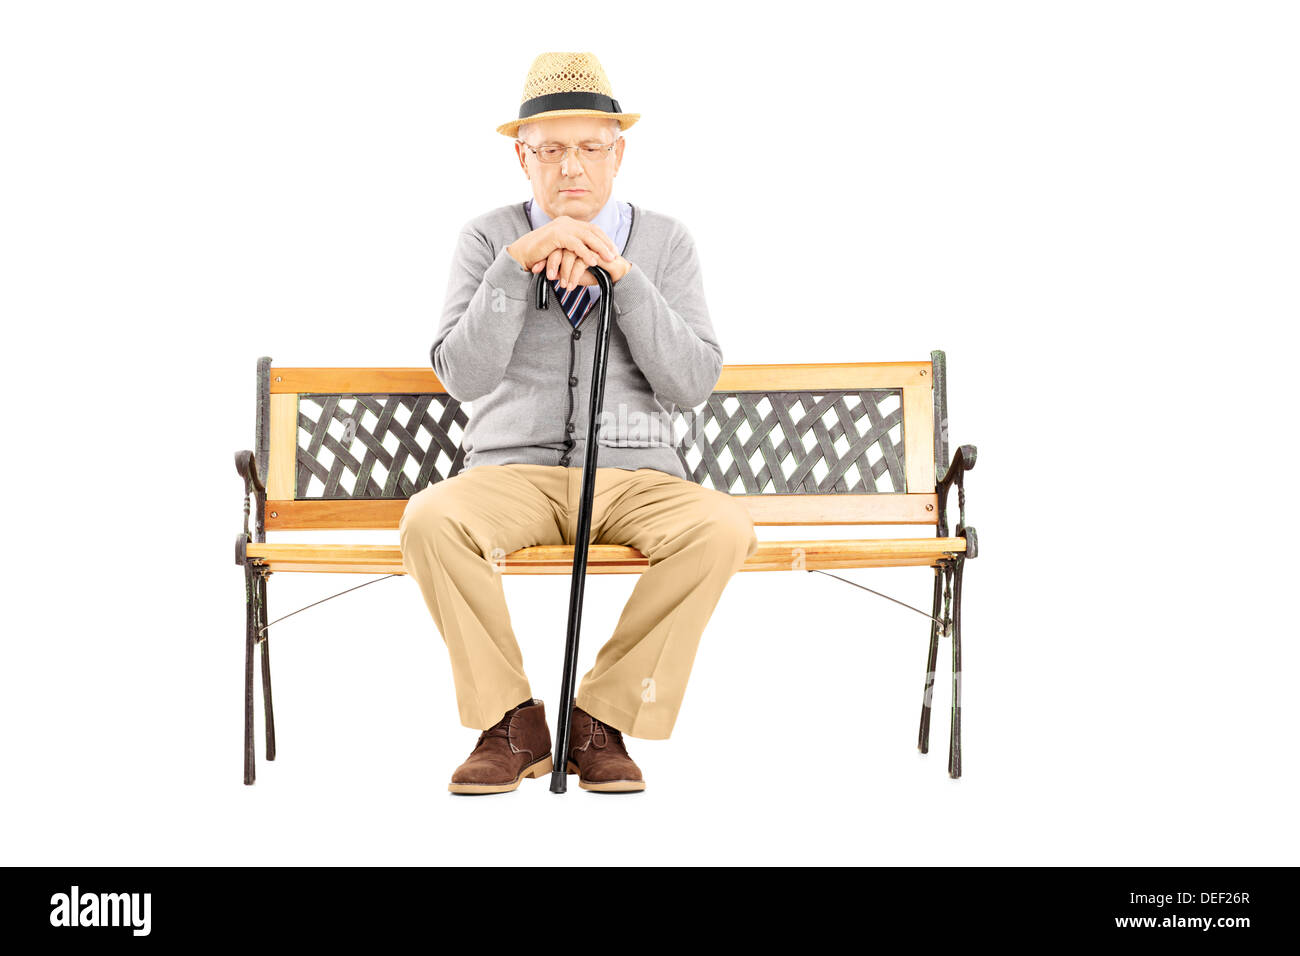 Sad man avec une canne assis sur un banc en bois Banque D'Images